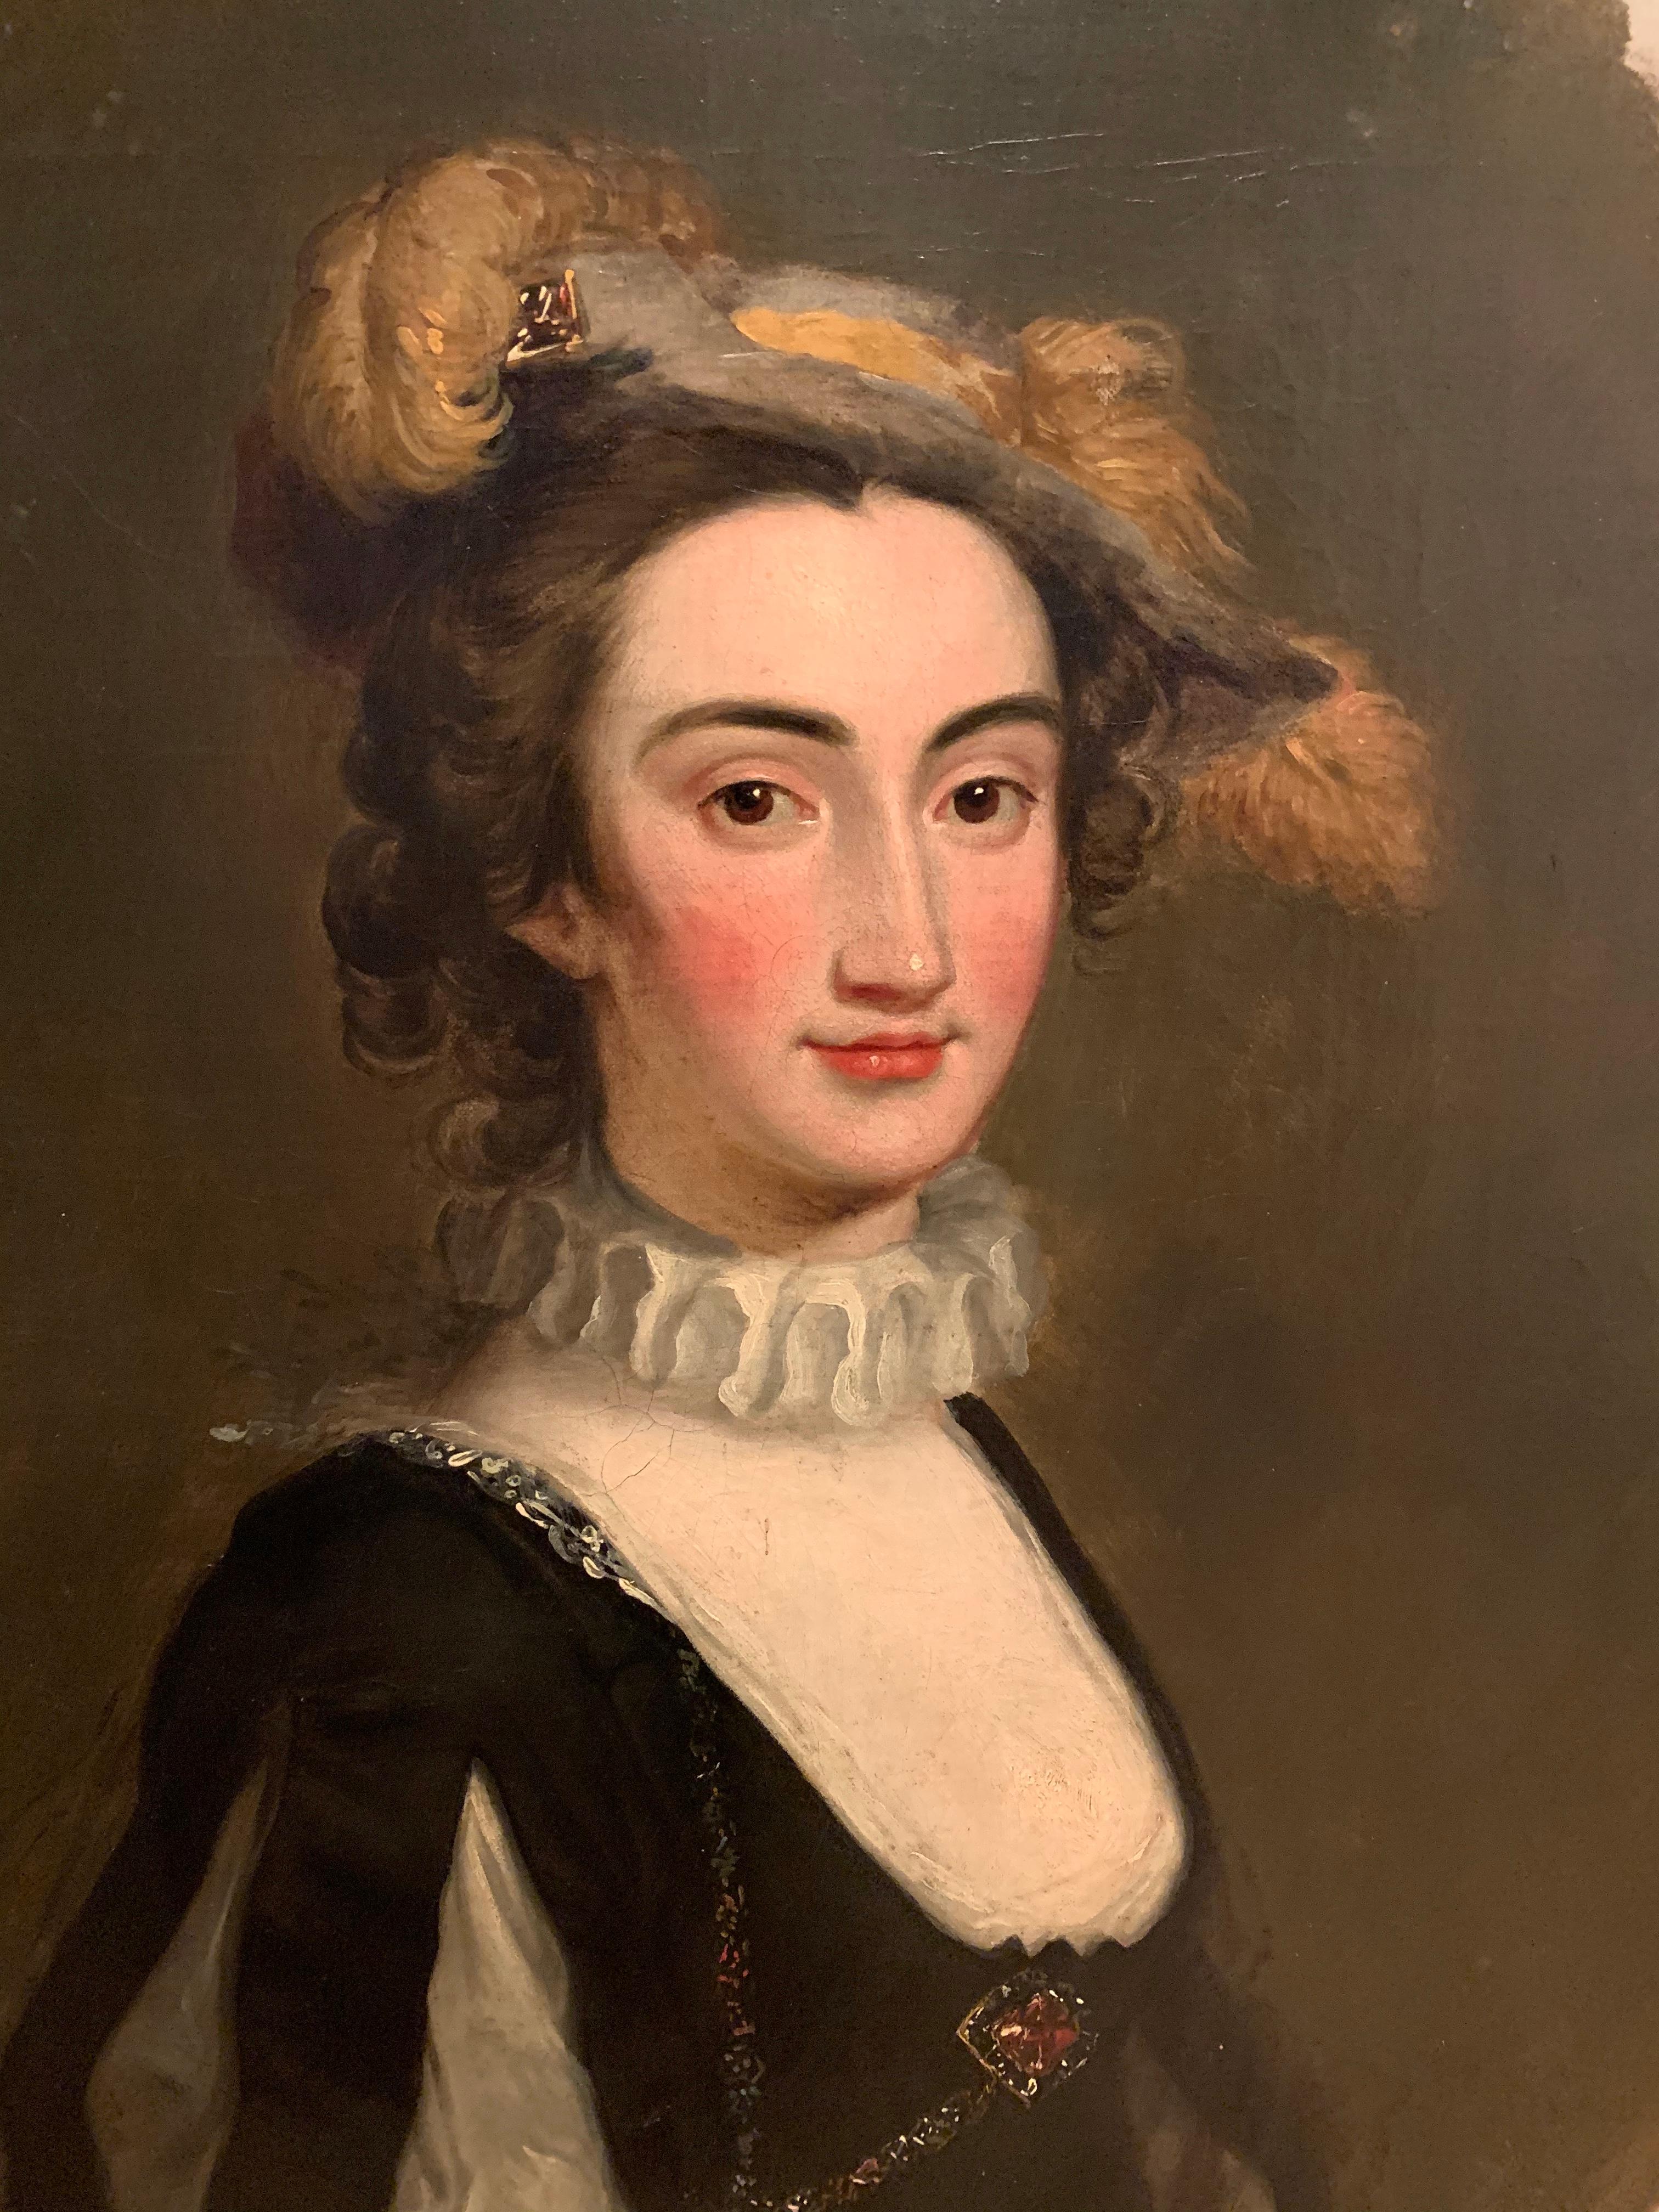 Portrait of Lady Elizabeth Pole - 18th century British Portrait Painting 8